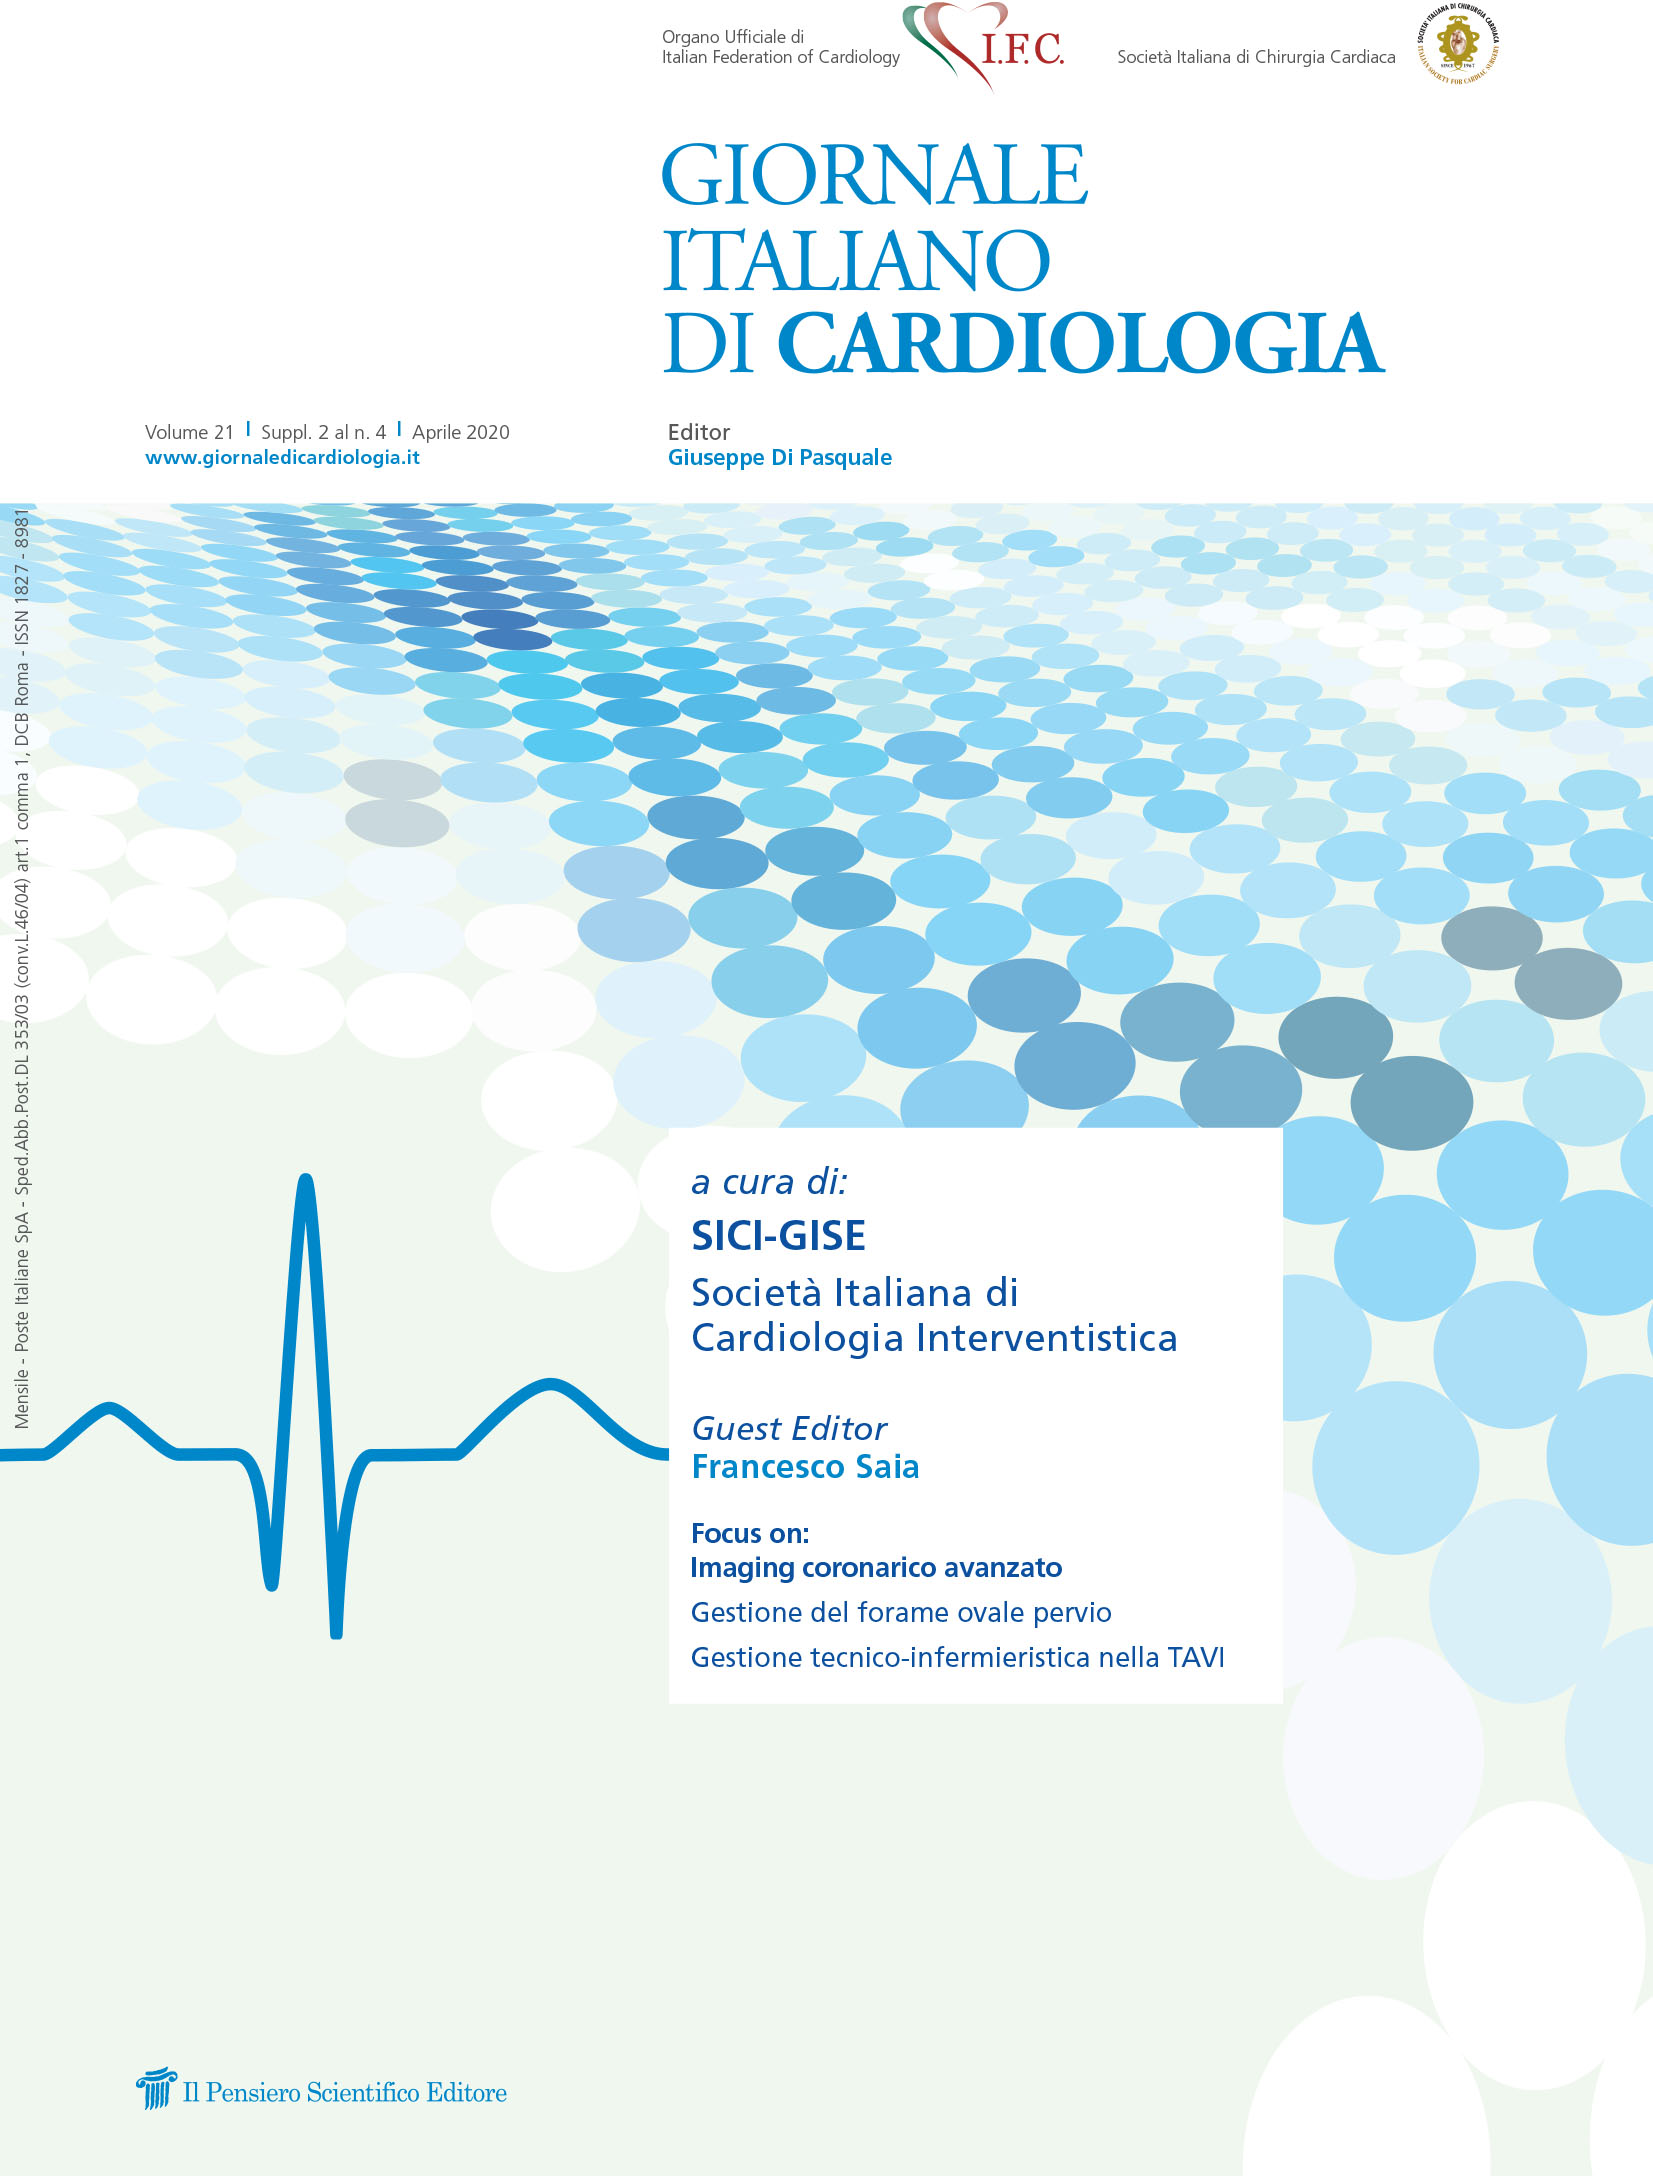 2020 Vol. 21 Suppl. 2 al N. 4 Aprilea cura di: SICI-GISE Società Italiana di Cardiologia Interventistica